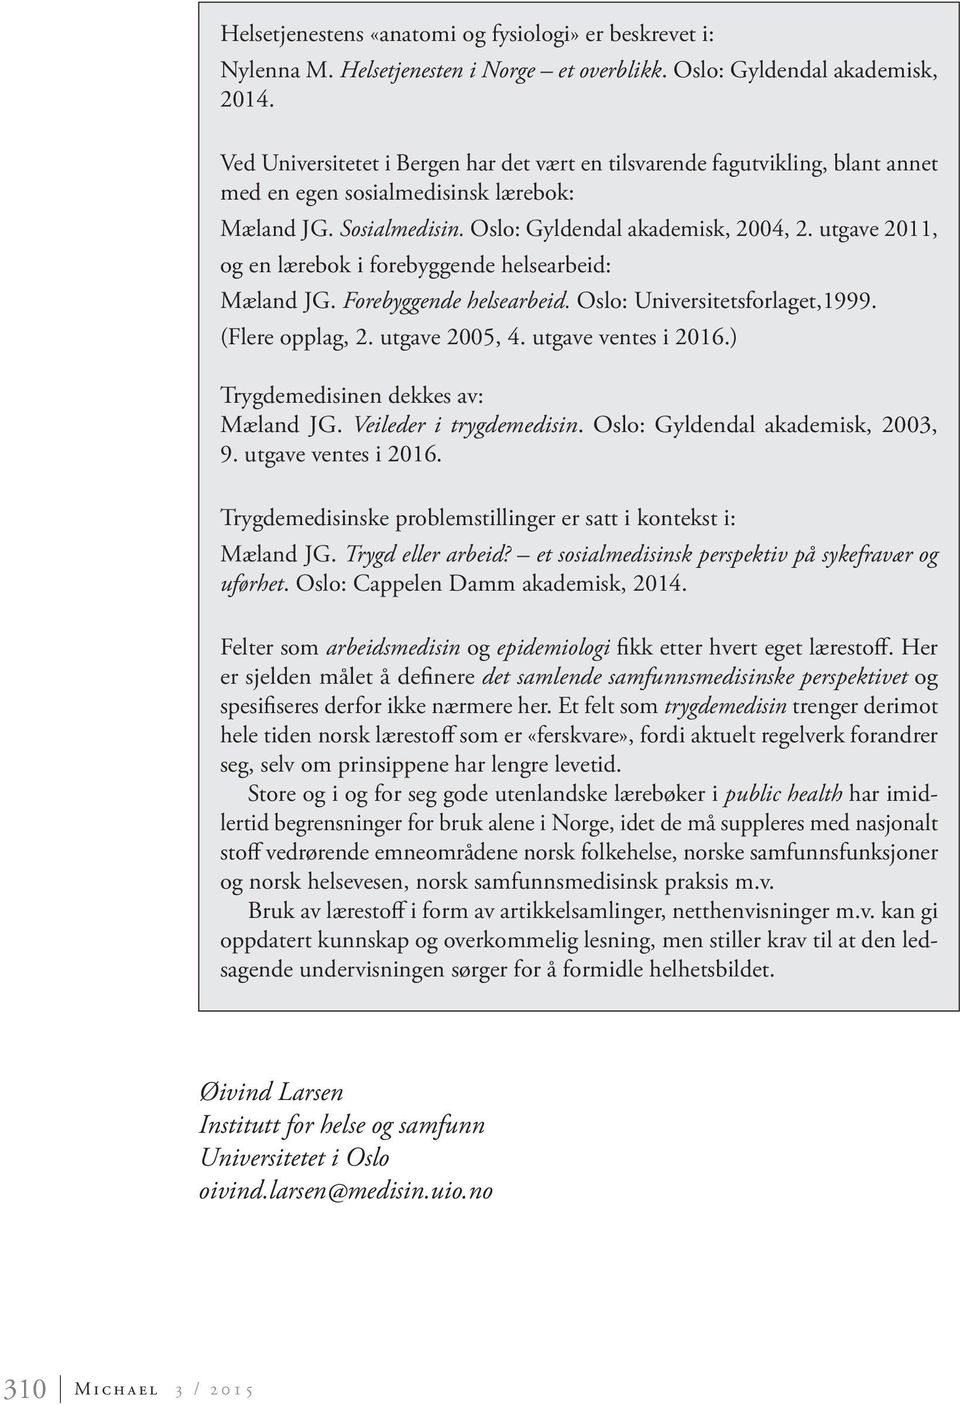 utgave 2011, og en lærebok i forebyggende helsearbeid: Mæland JG. Forebyggende helsearbeid. Oslo: Universitetsforlaget,1999. (Flere opplag, 2. utgave 2005, 4. utgave ventes i 2016.